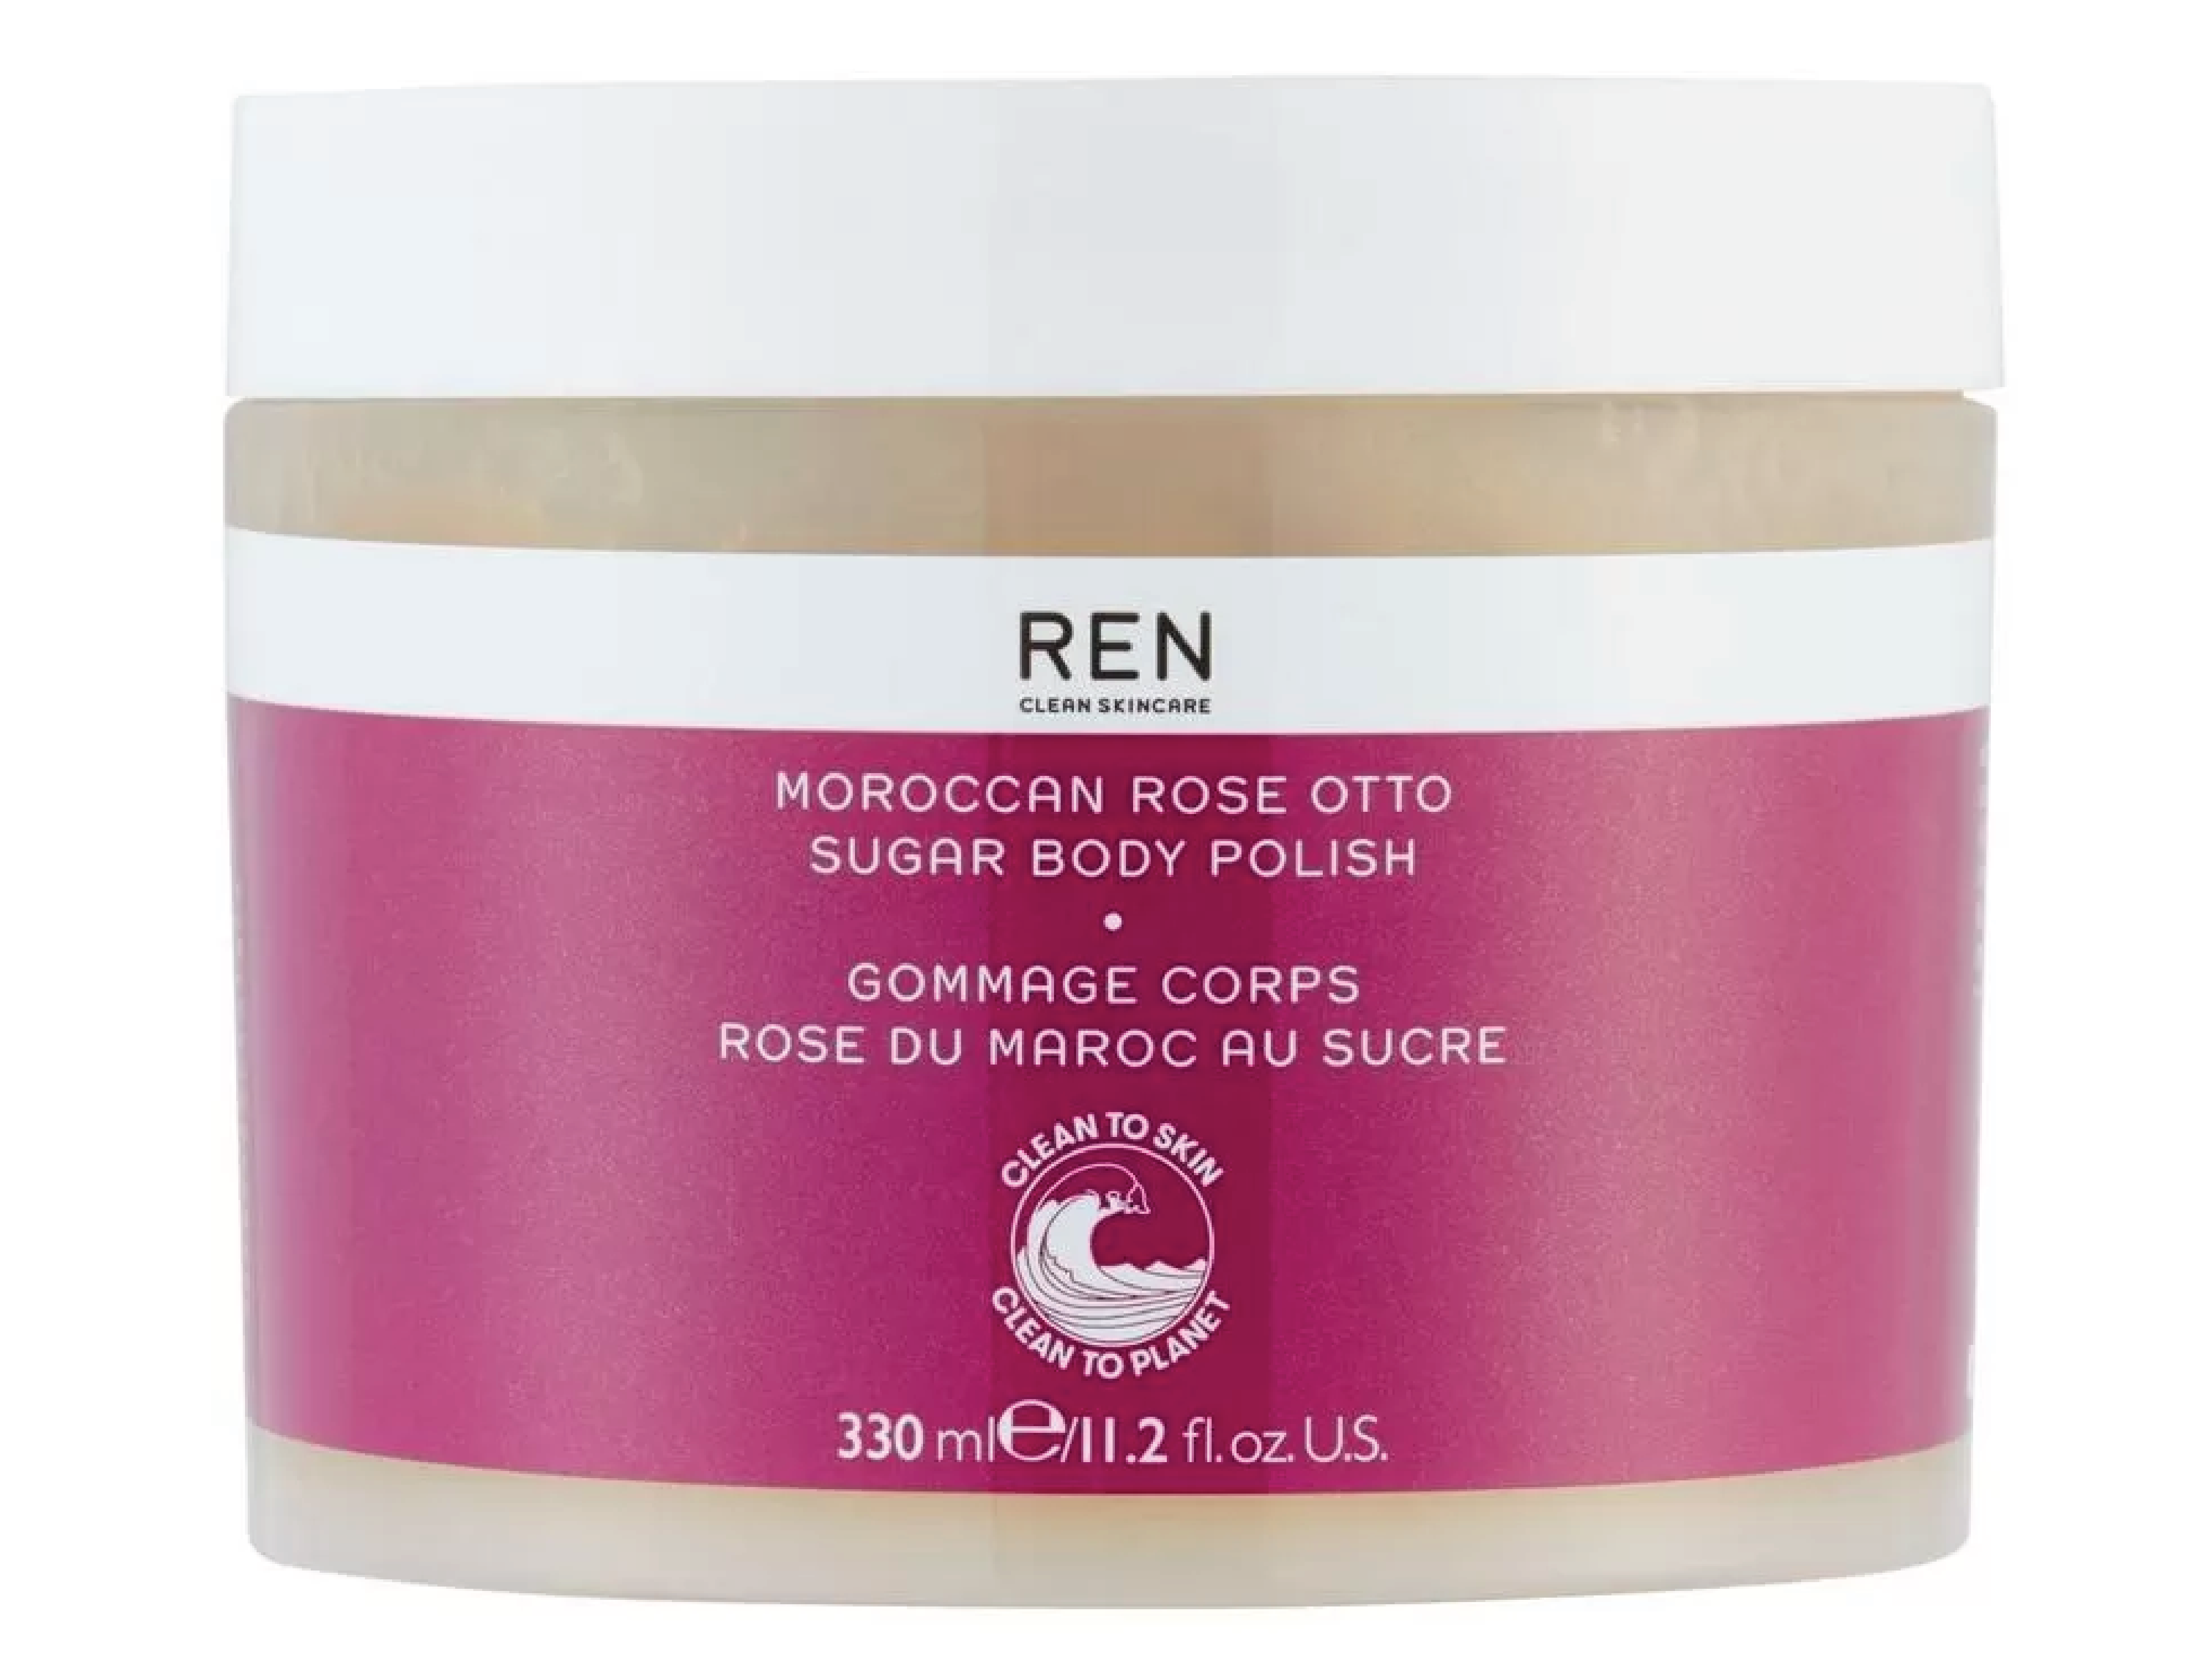 Moroccan Rose Otto Sugar Body Polish, 330 ml